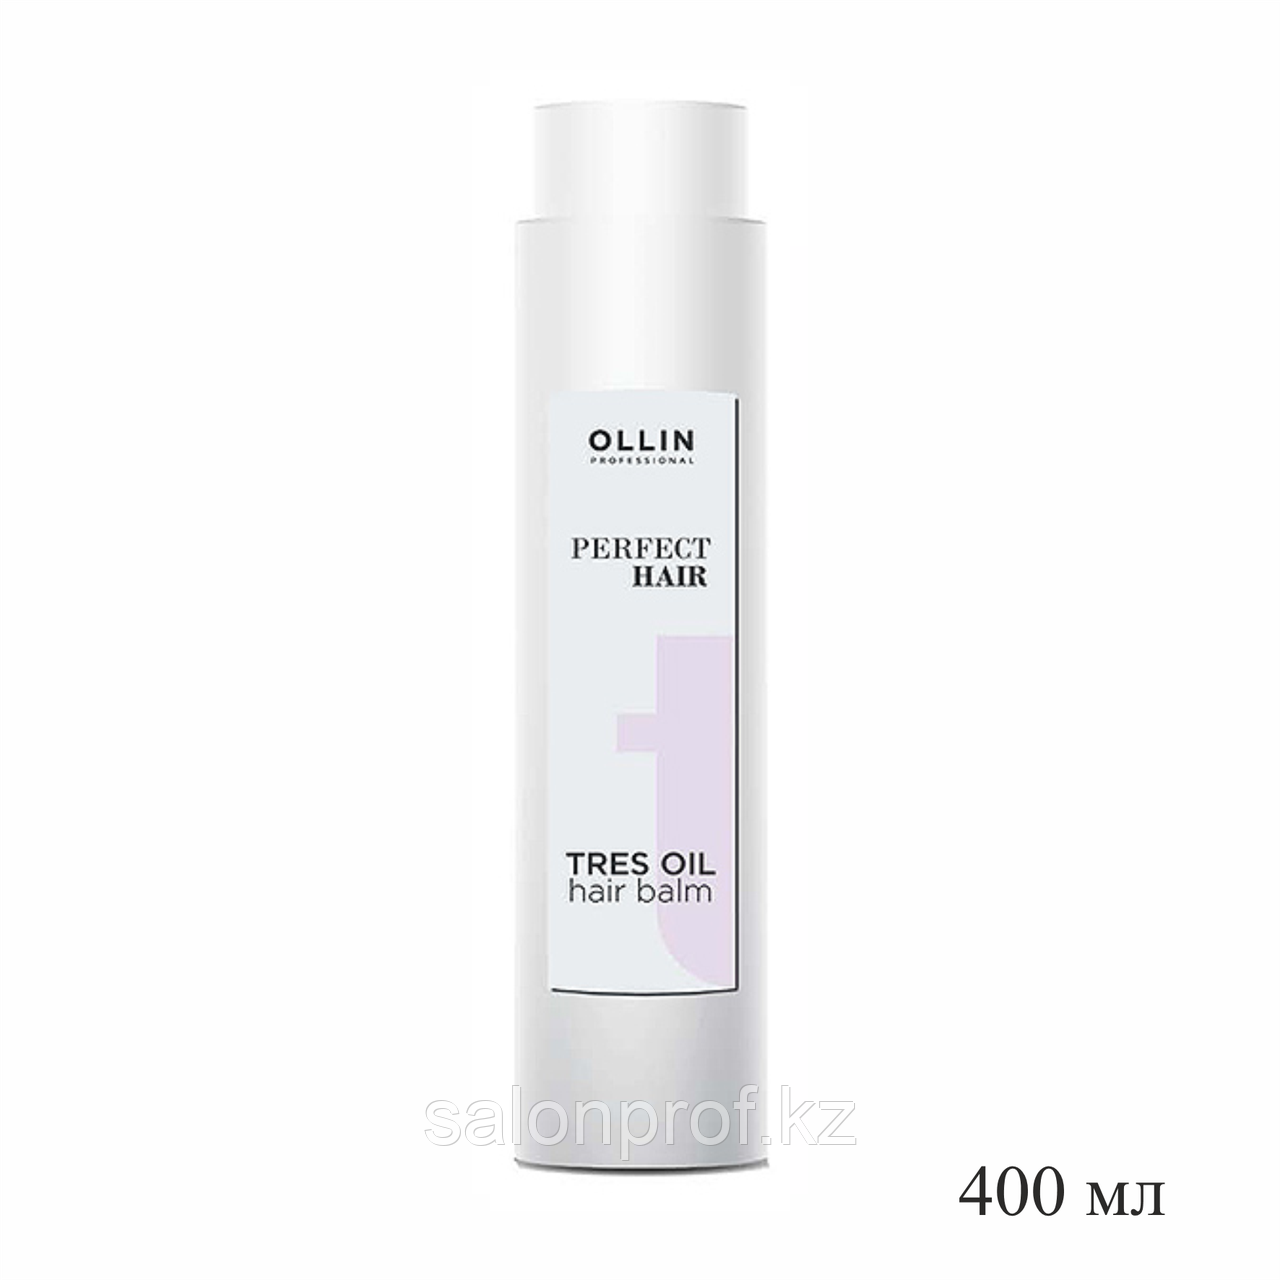 Бальзам для волос OLLIN PERFECT HAIR TRES OIL 400 мл №95737